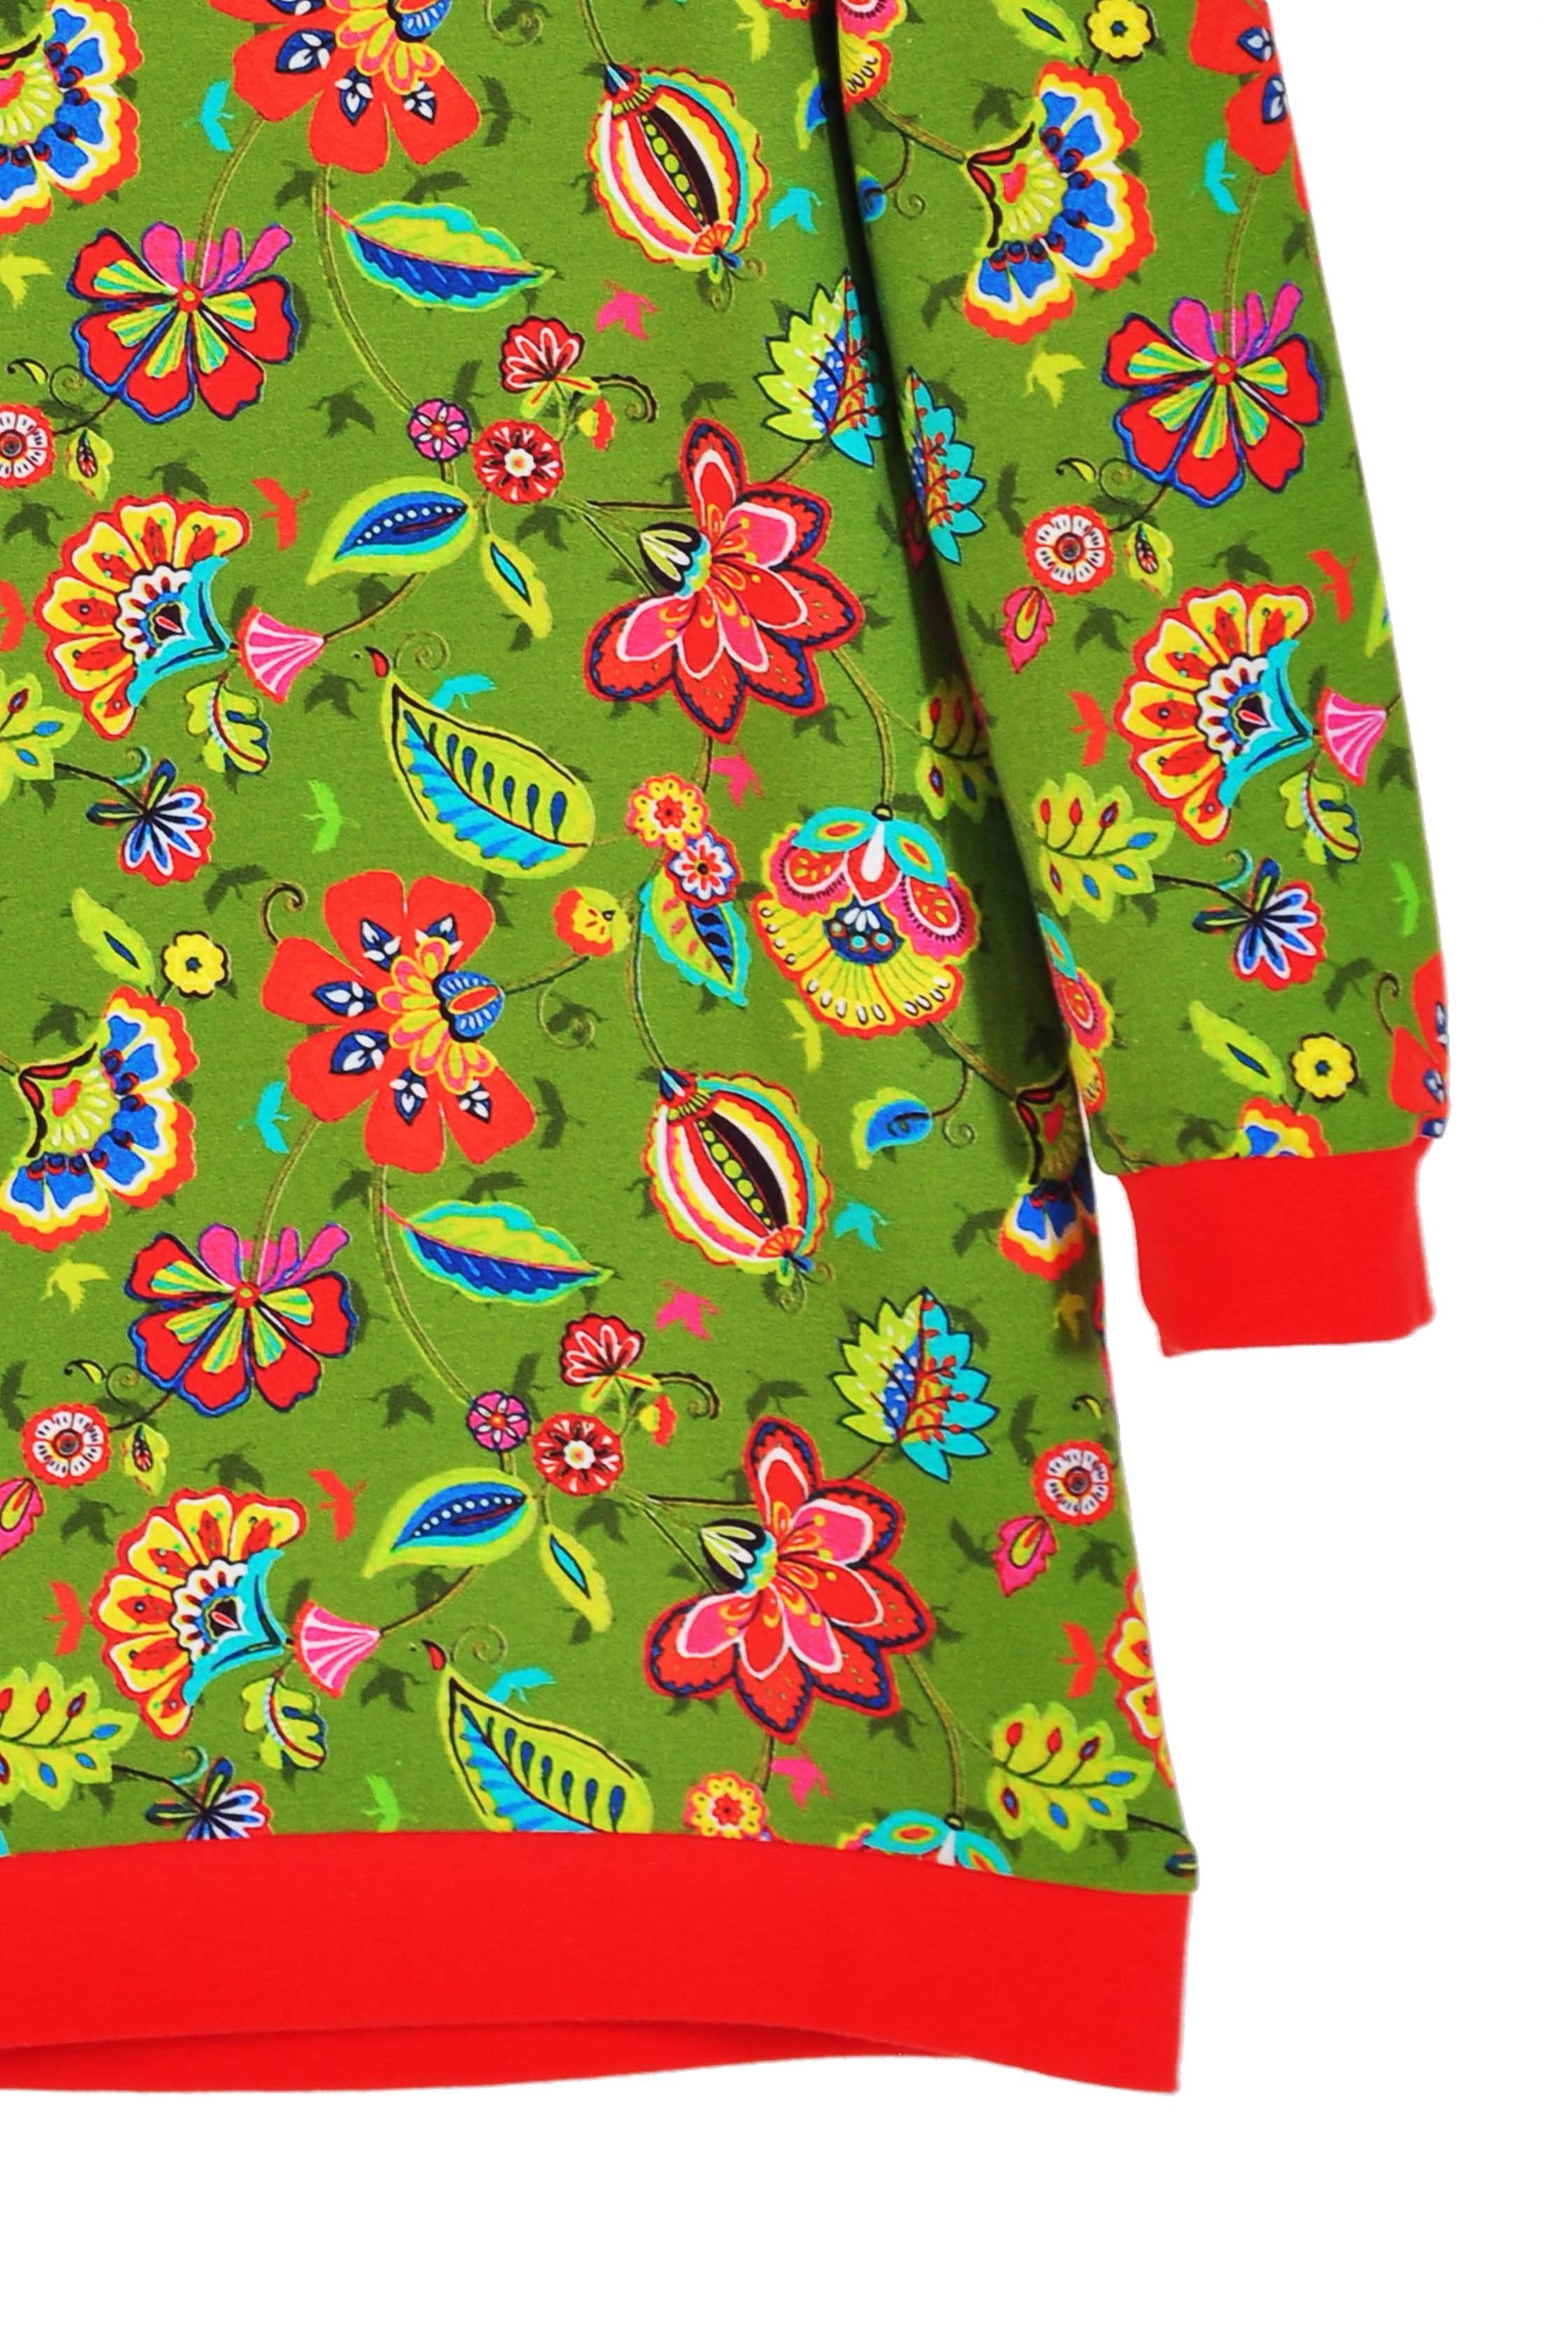 Kleid Produktion Sweatshirt coole Motivdruck für oliv coolismo Sweatkleid Mädchen mit europäische Blumen